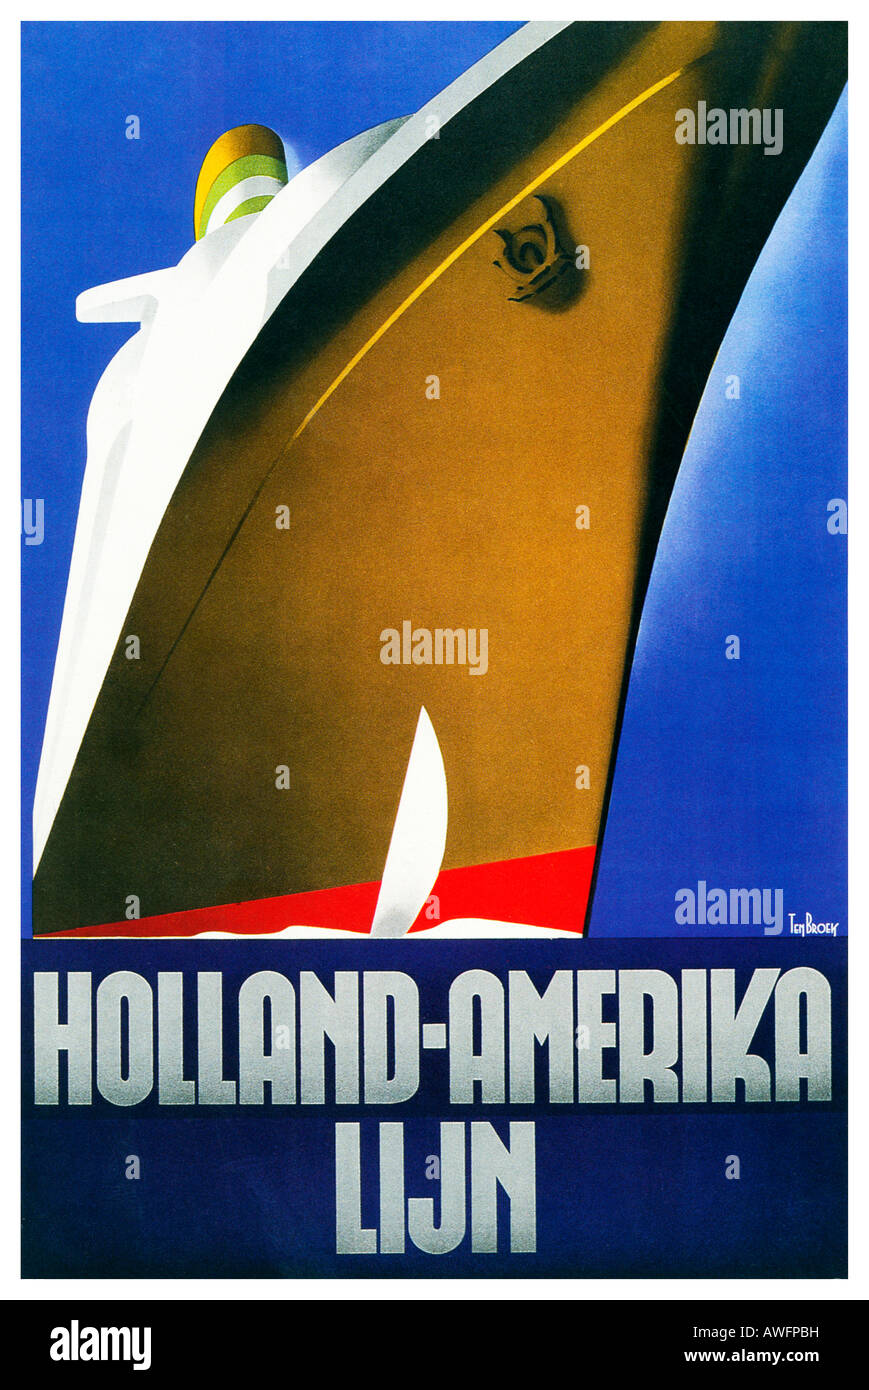 La Holland America Line 1936 Art déco superbe affiche pour le service de ligne transatlantique néerlandais Banque D'Images